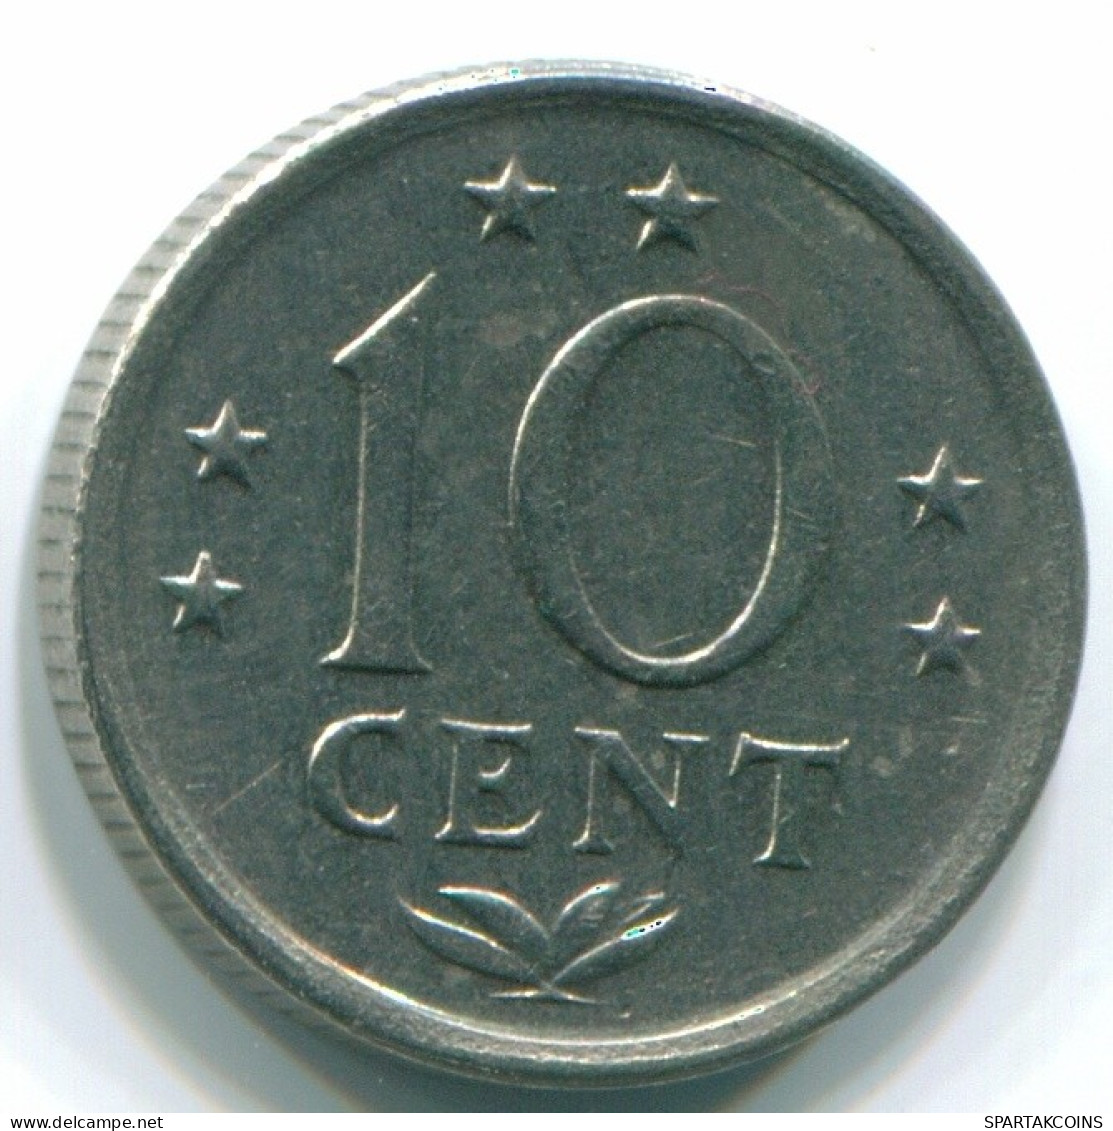 10 CENTS 1970 NETHERLANDS ANTILLES Nickel Colonial Coin #S13345.U.A - Niederländische Antillen